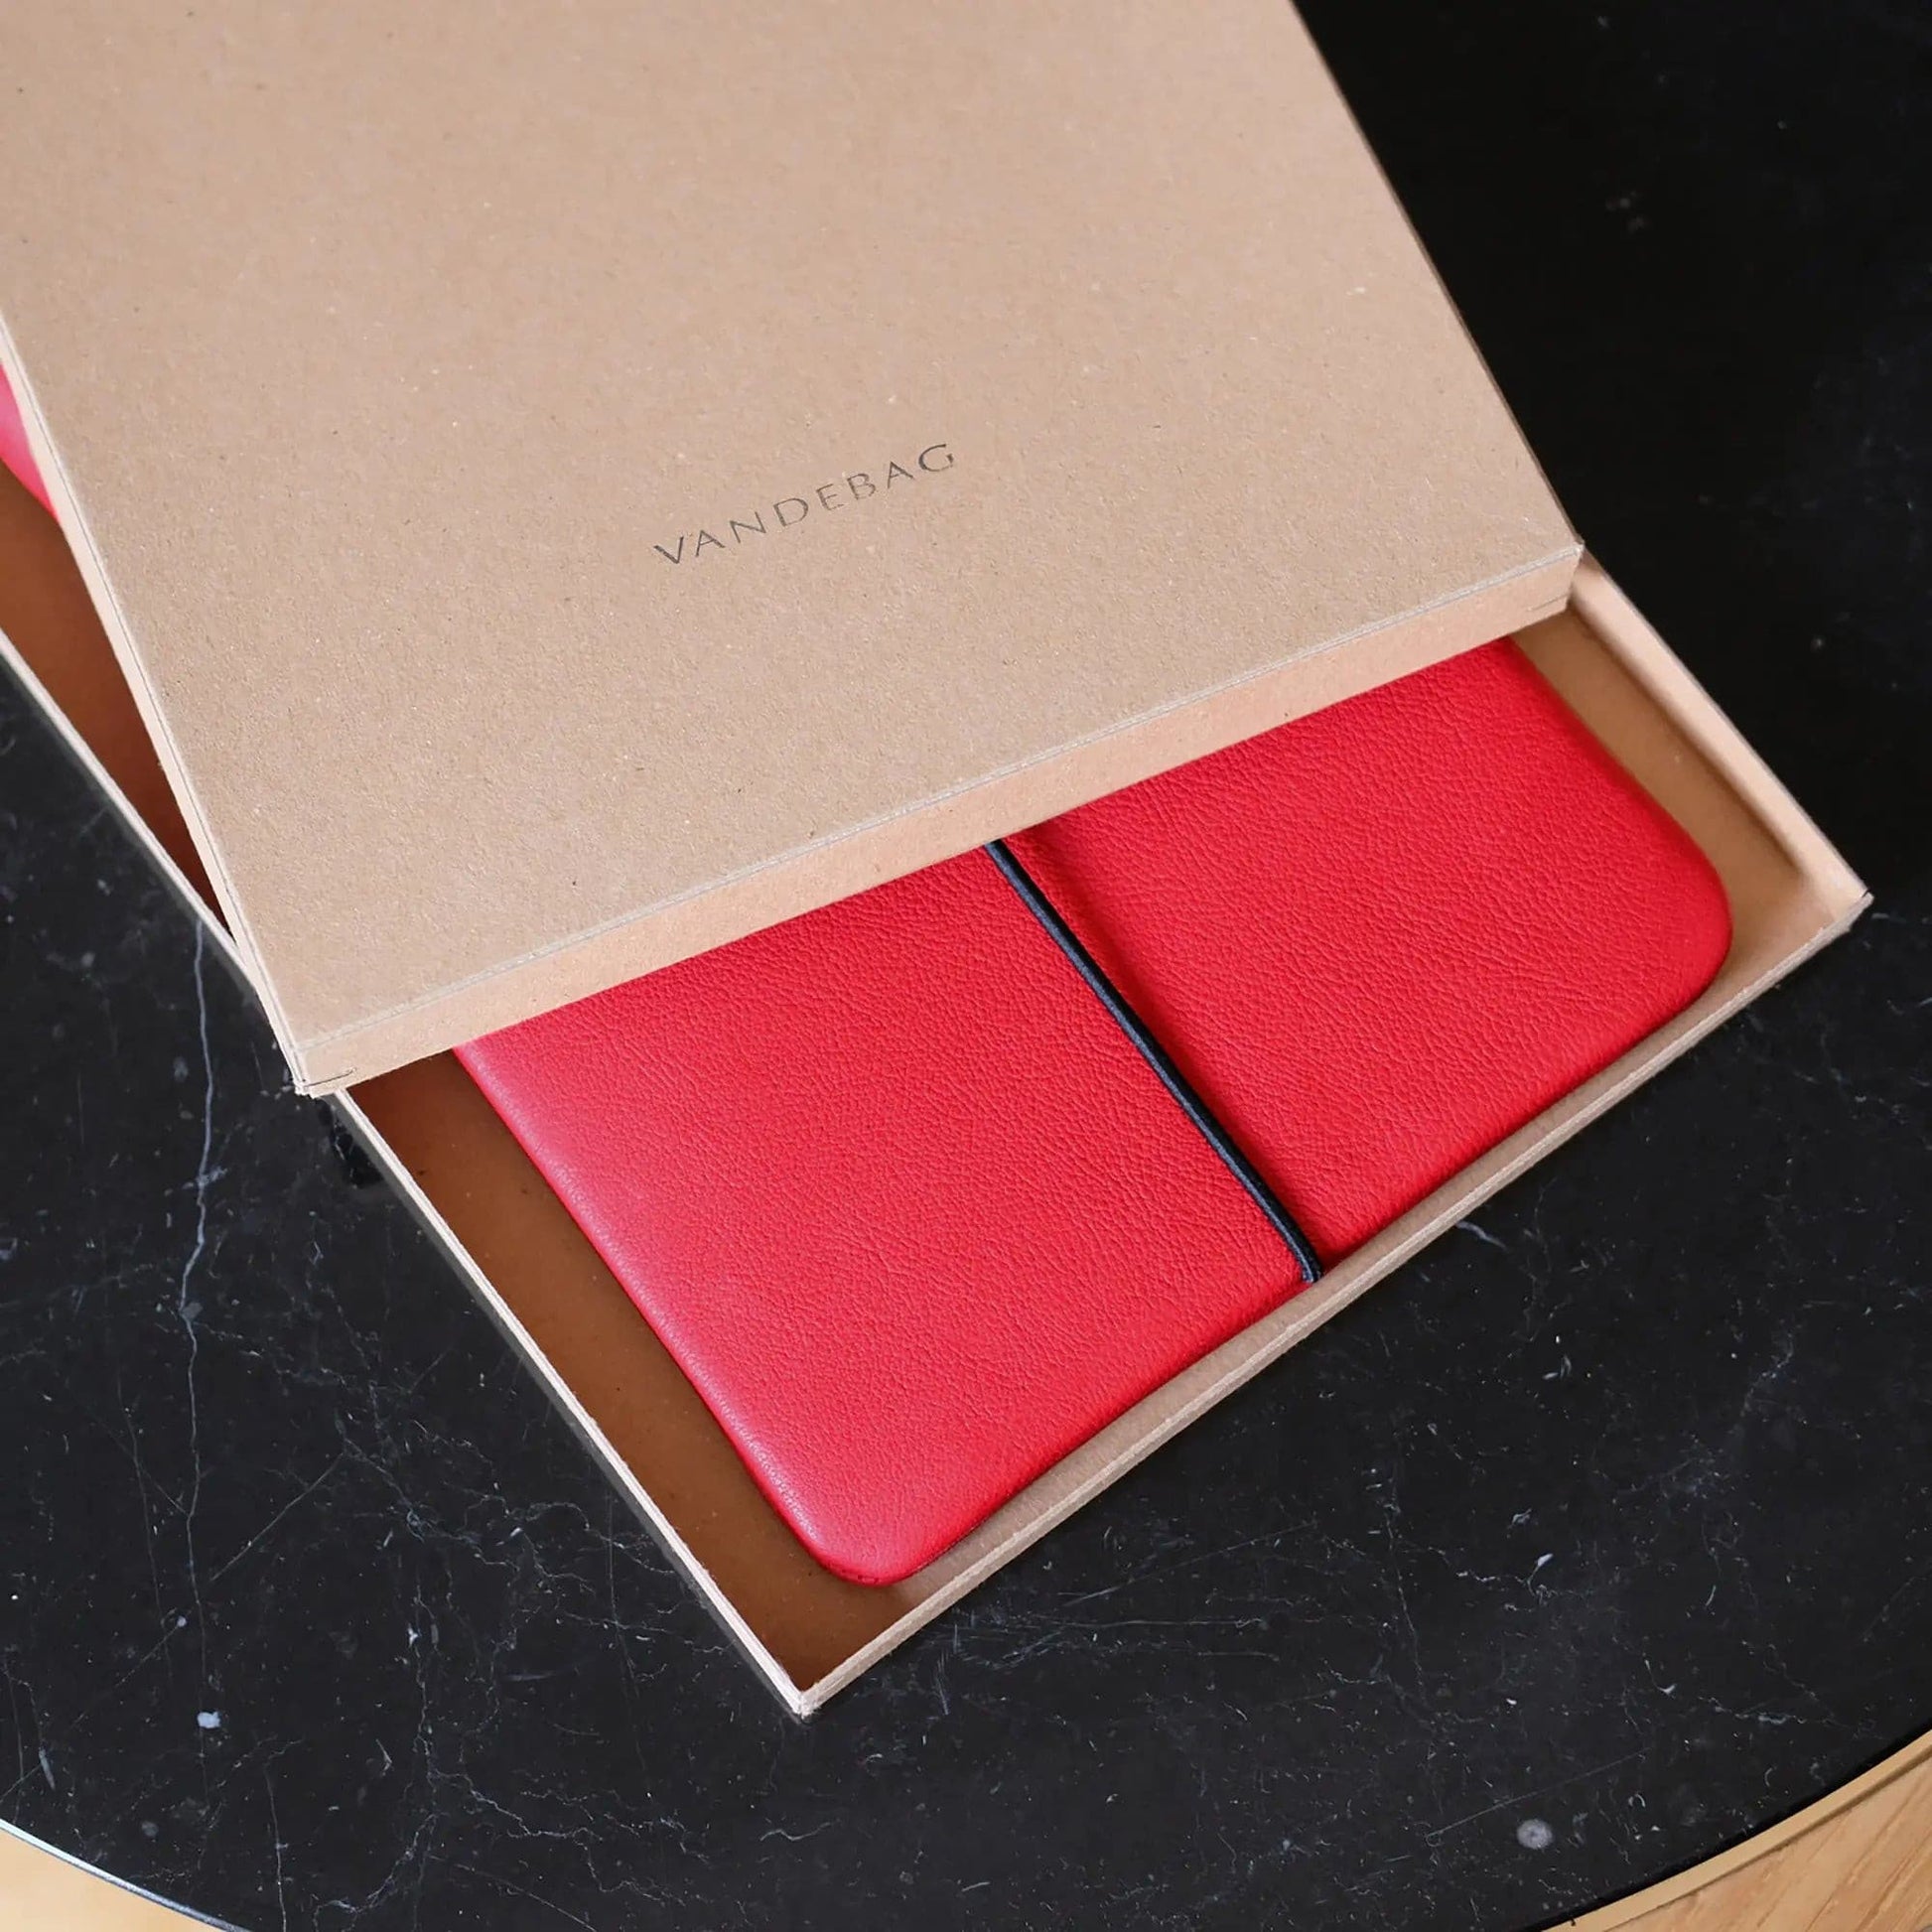 Macbookhülle aus rotem Leder liegt in einem Geschenkkarton mit Aufdruck Vandebag